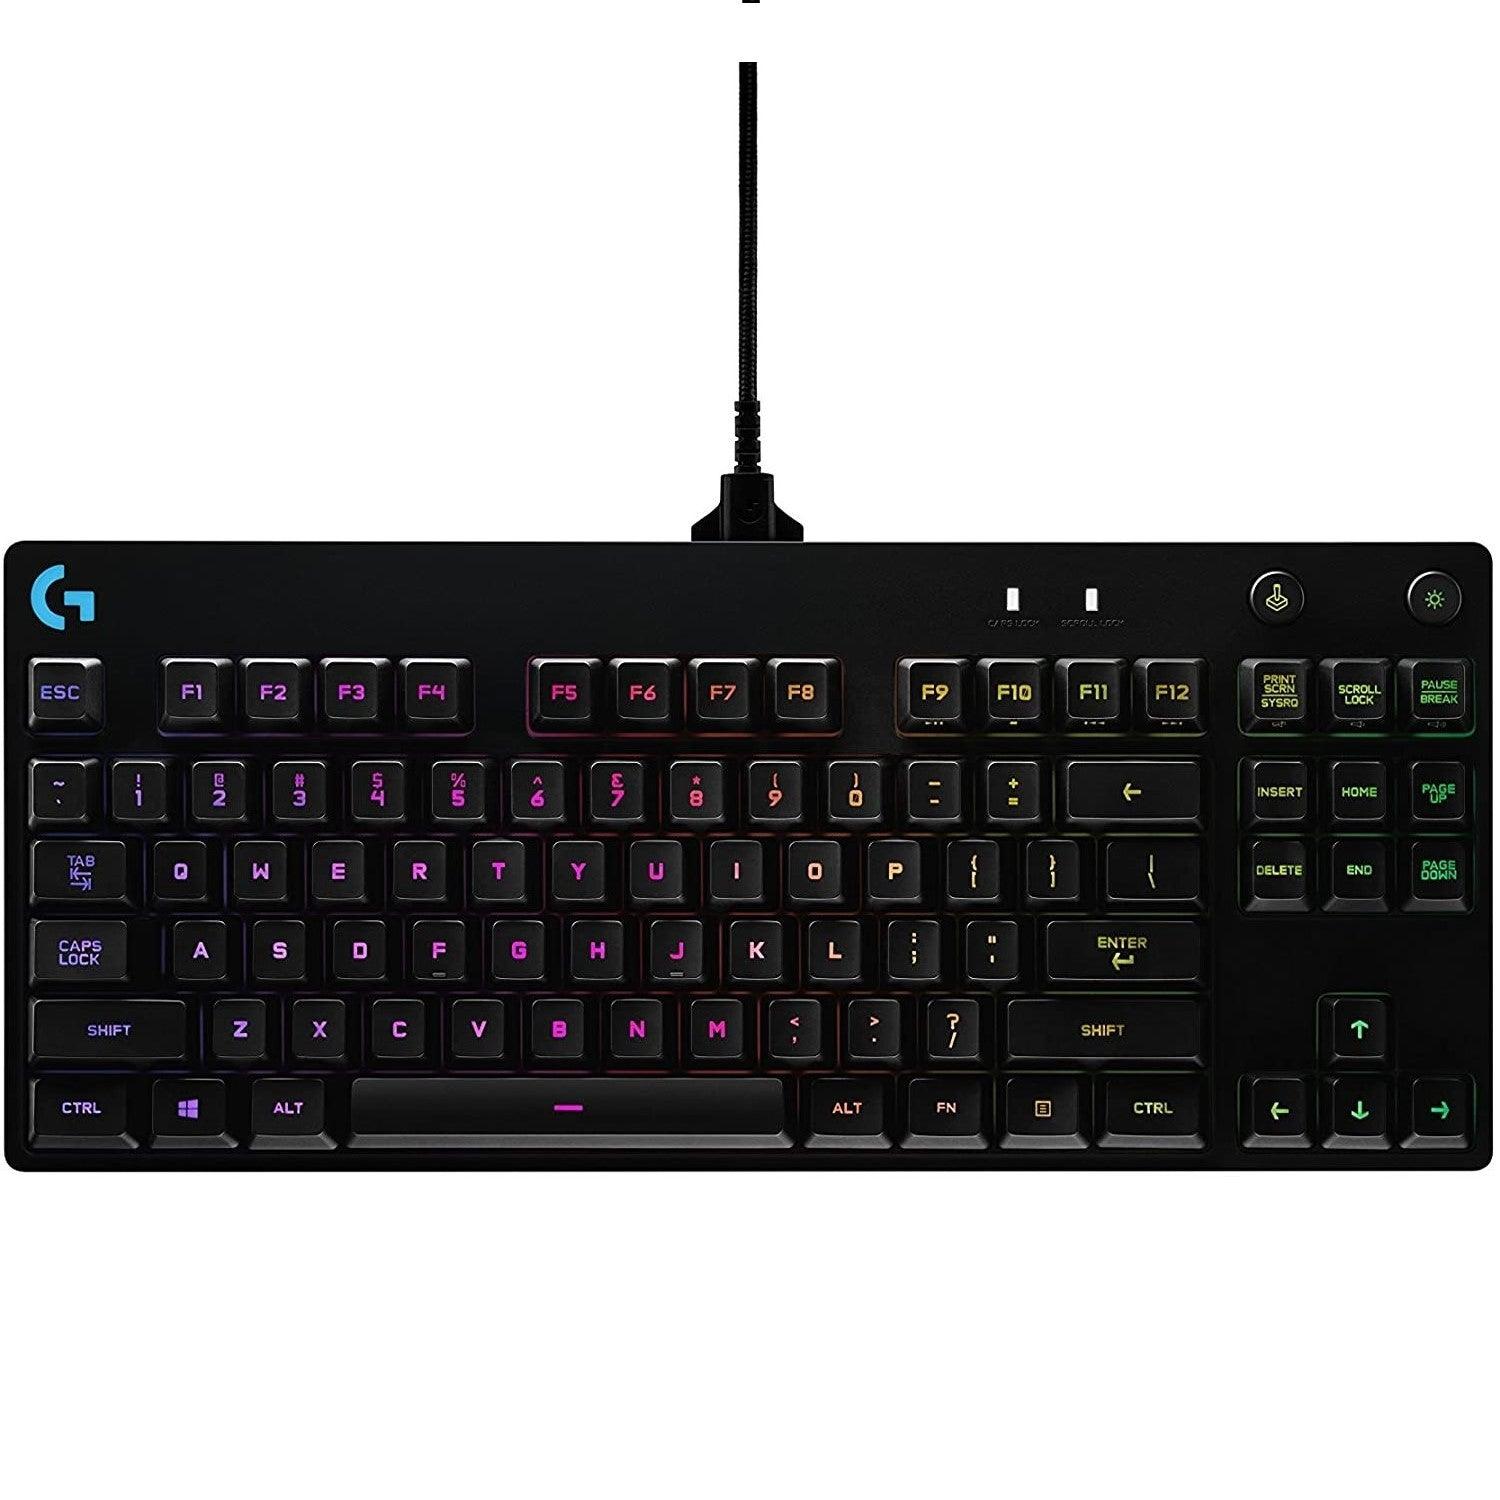 Logitech G PRO Mechanical Gaming Keyboard, Ultra Portable TKL Design, 16.8 Million Color LIGHTSYNC RGB Backlit Keys